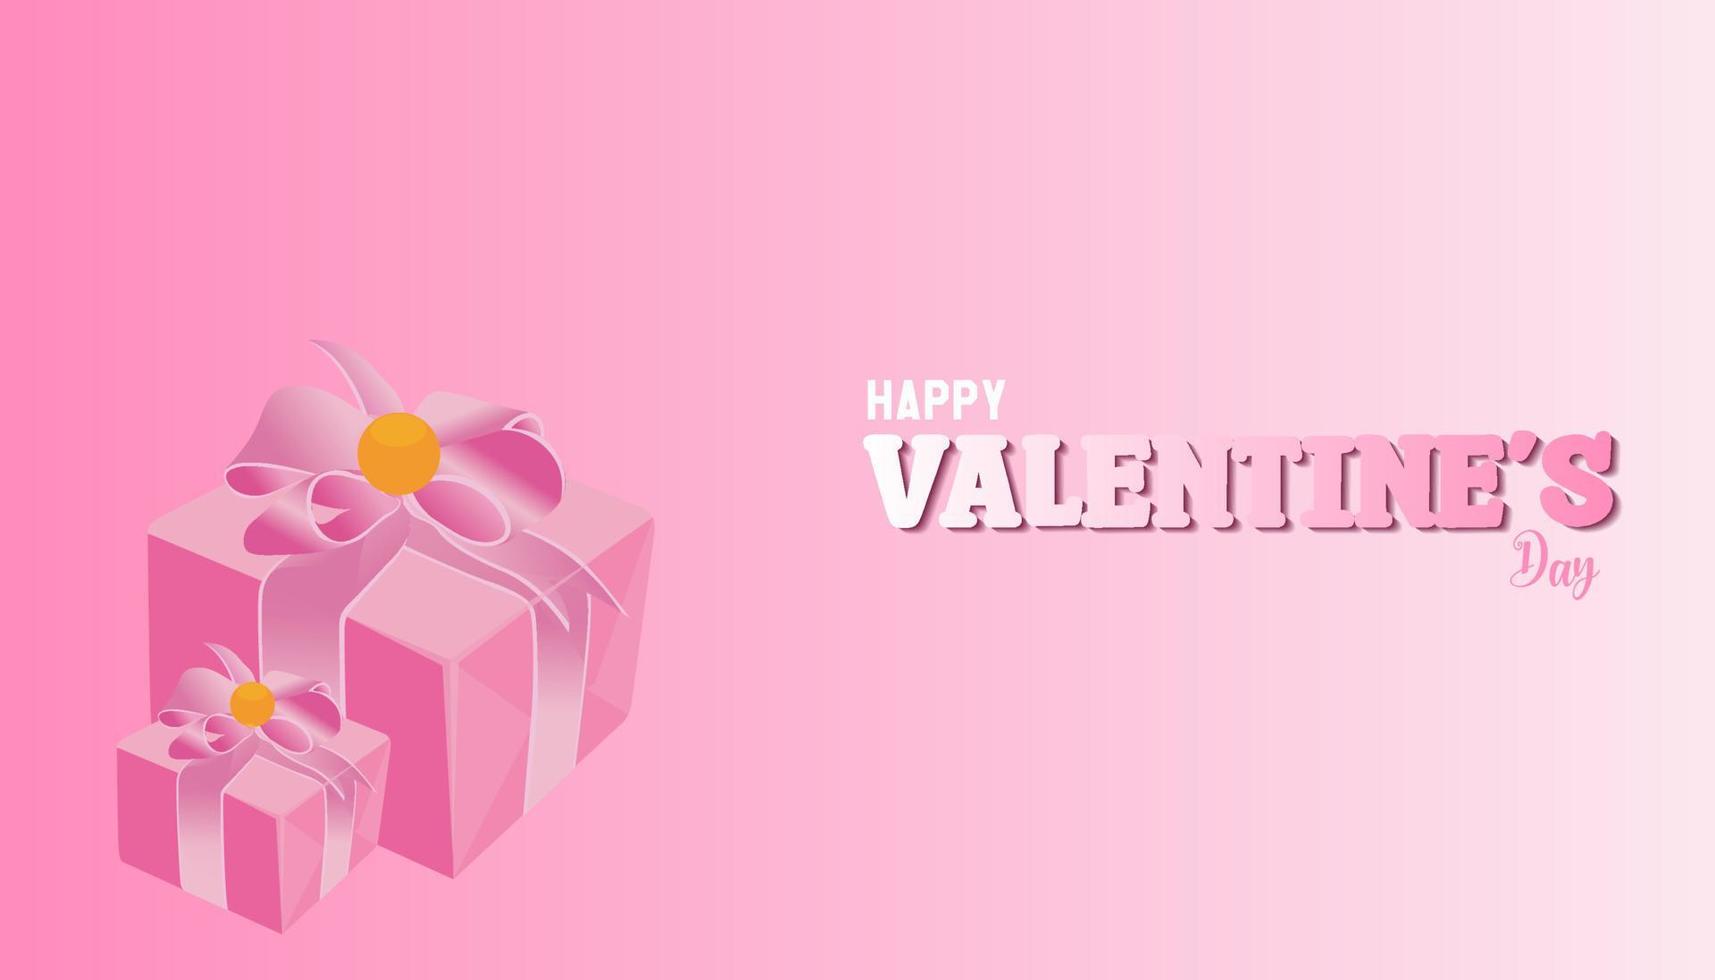 feliz día de san valentín 14 de febrero banner tarjeta de felicitación con colores brillantes y elegante diseño gráfico vector